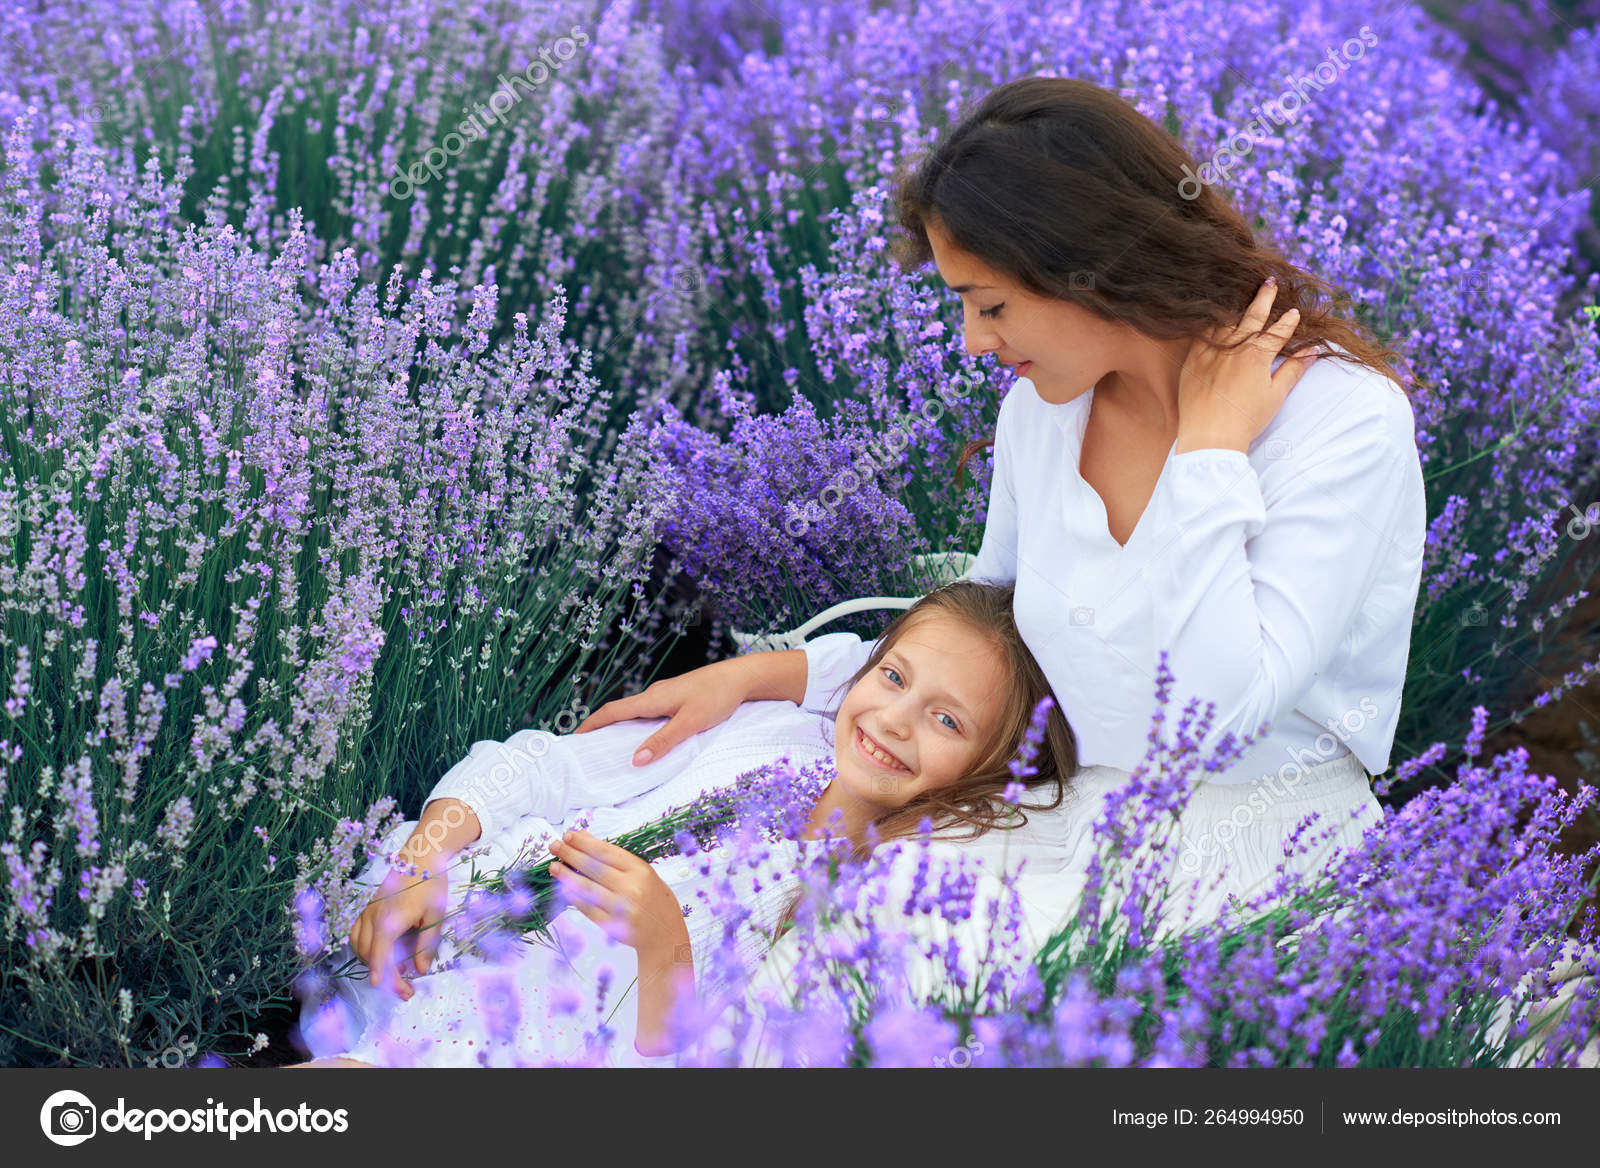 Niñas están en el campo de flores de lavanda, hermoso paisaje de verano:  fotografía de stock © soleg #264994950 | Depositphotos